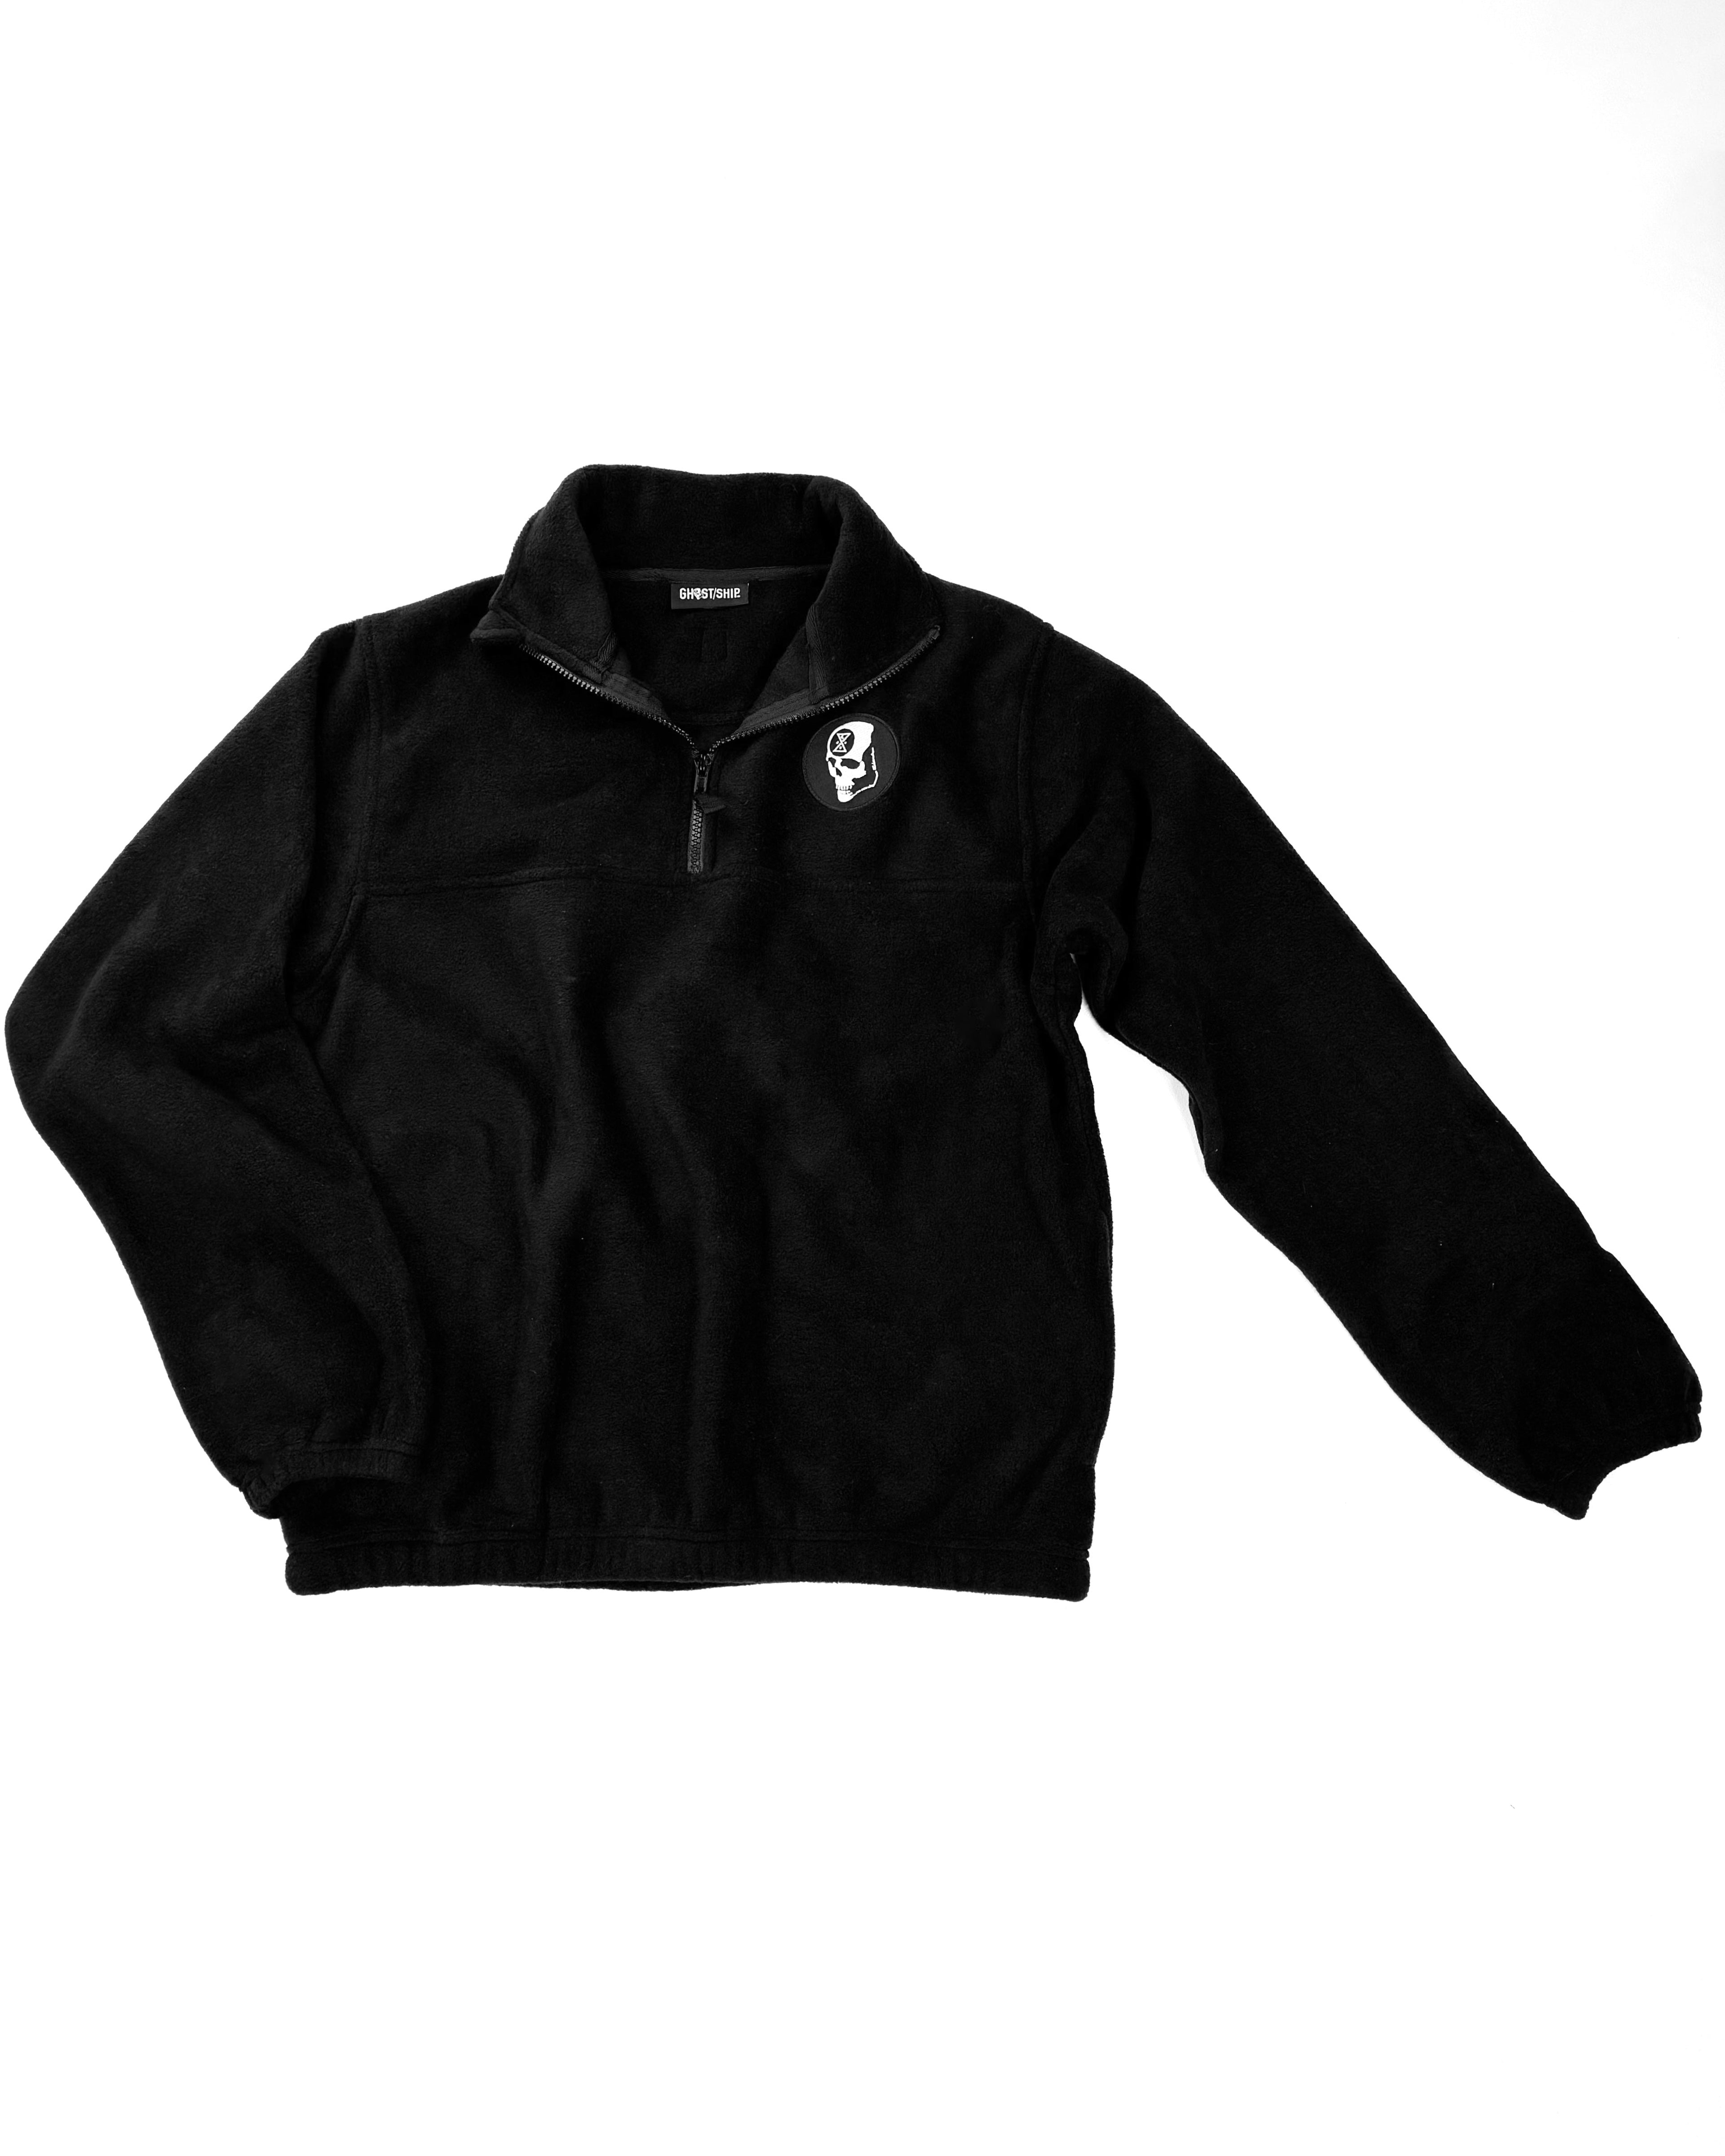 Black Half-Zip Fleece Pullover